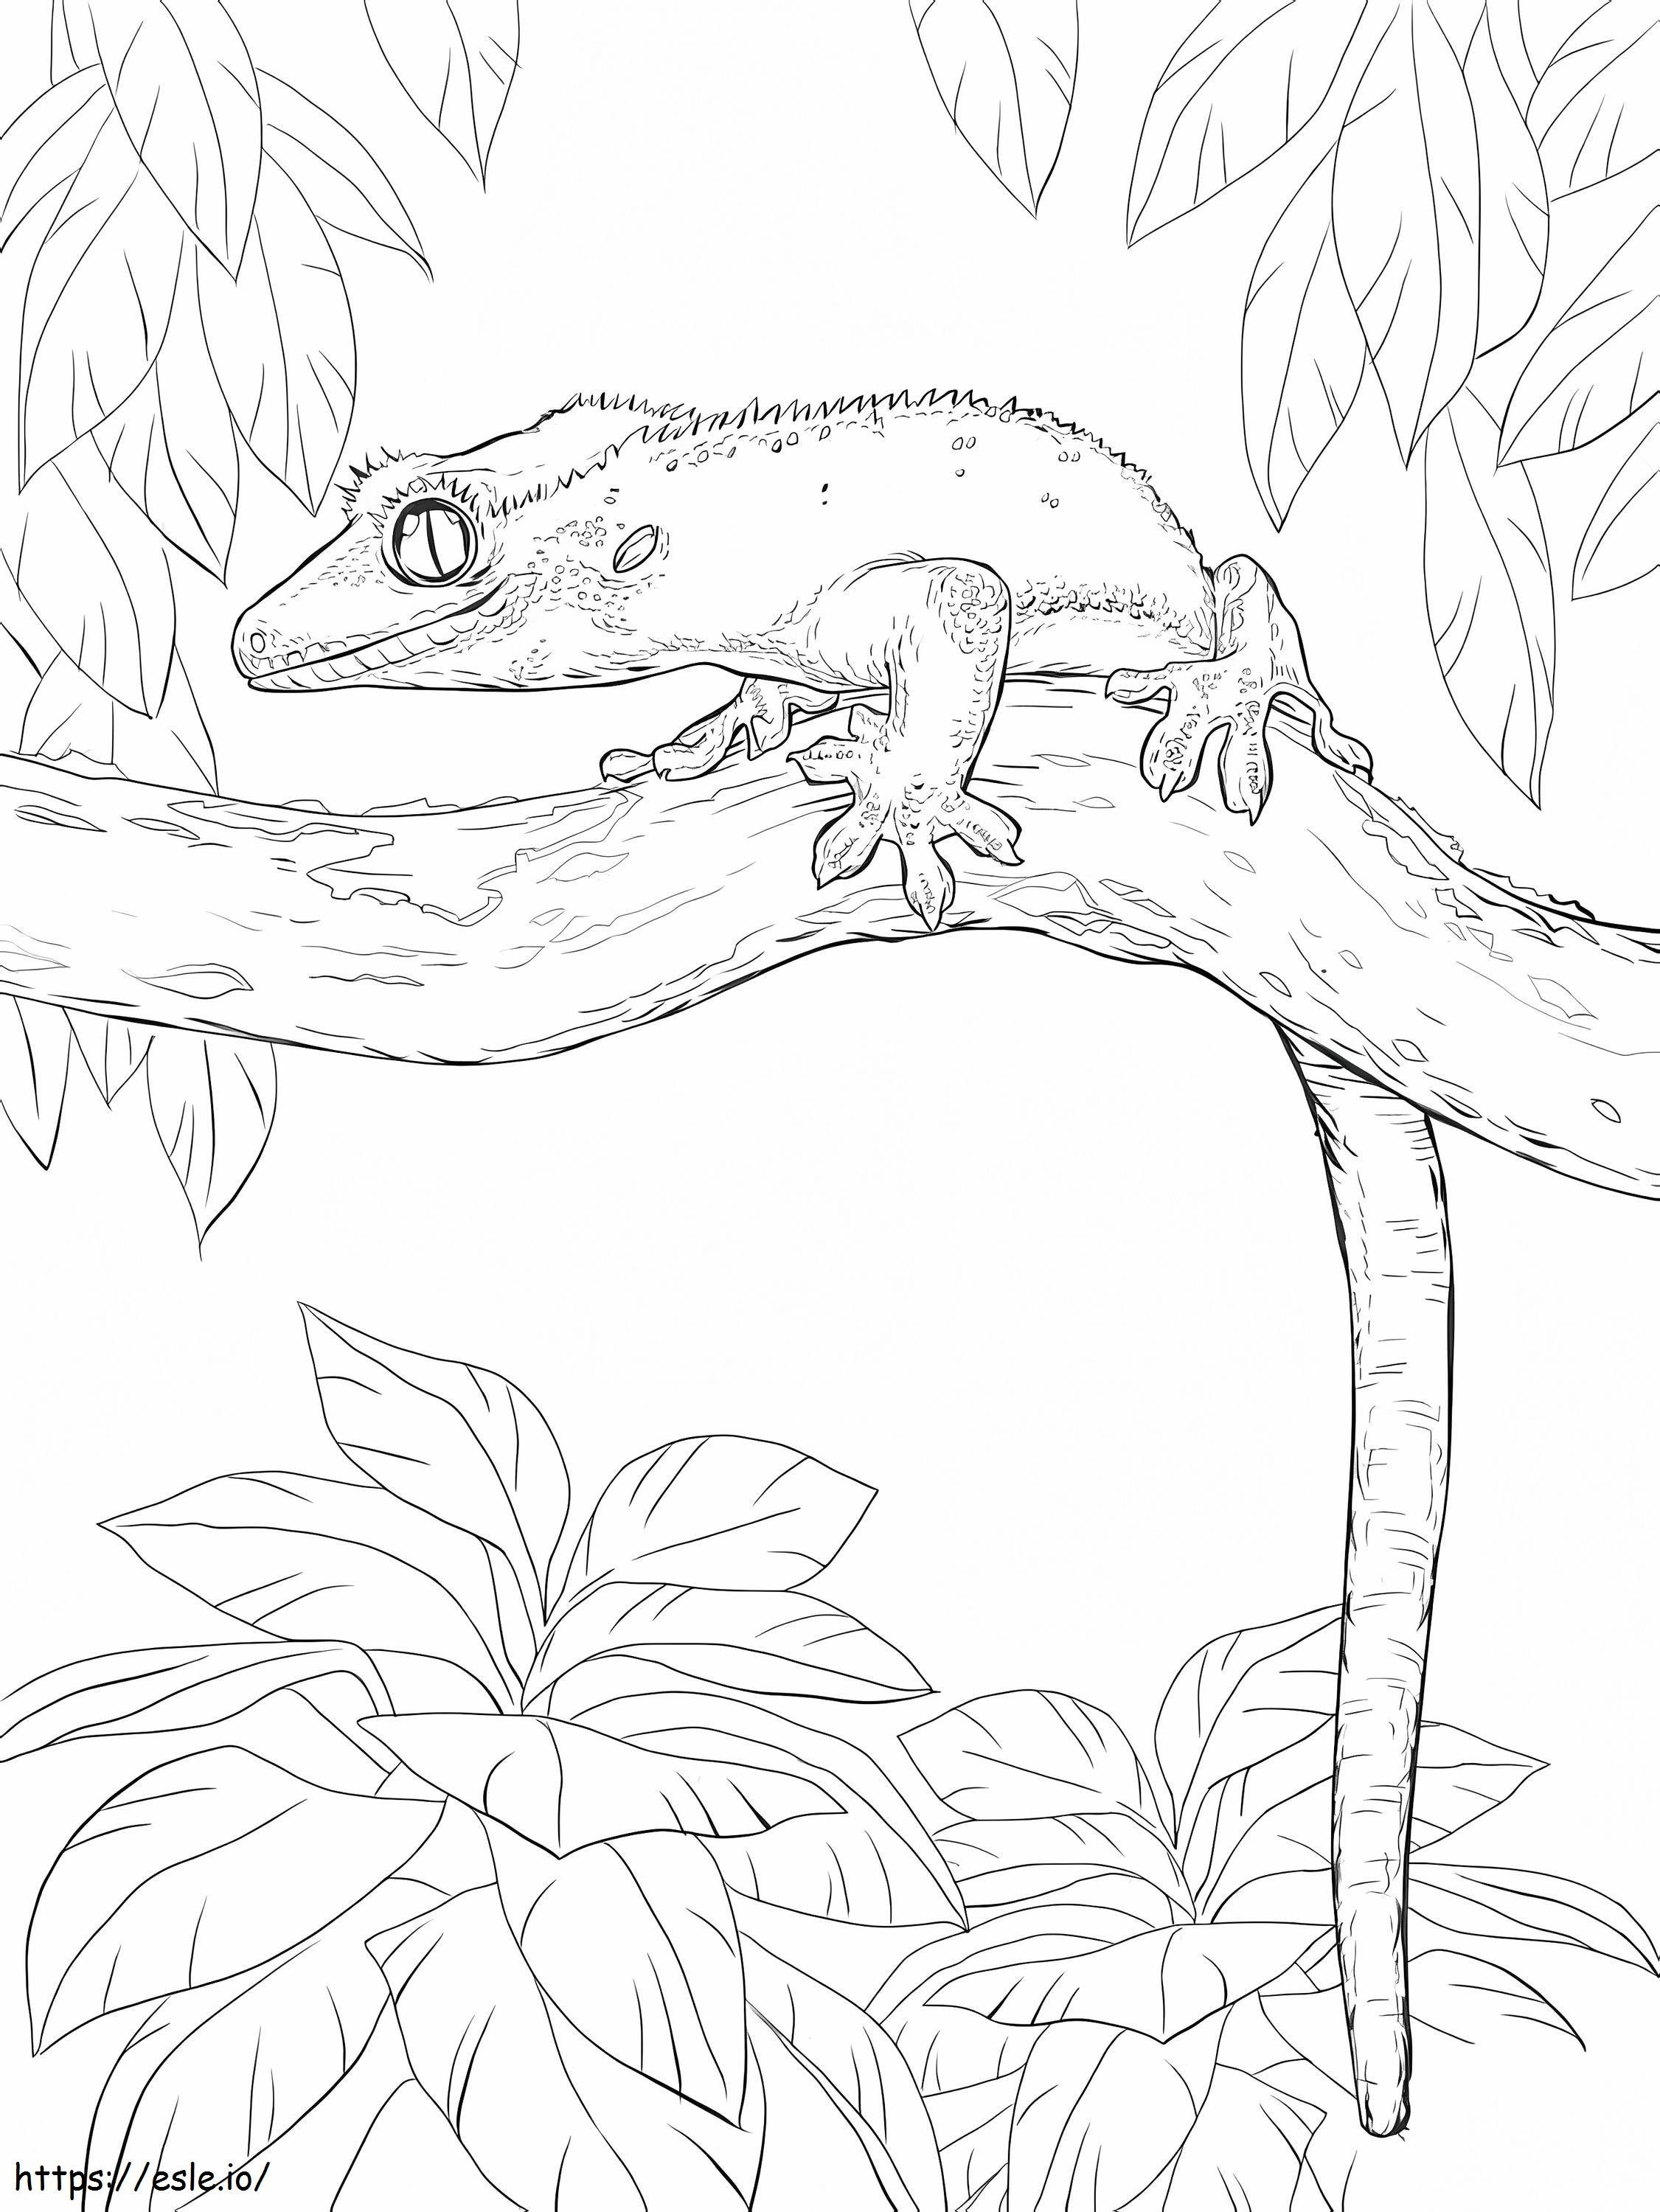 Ağaçtaki Tepeli Gecko boyama